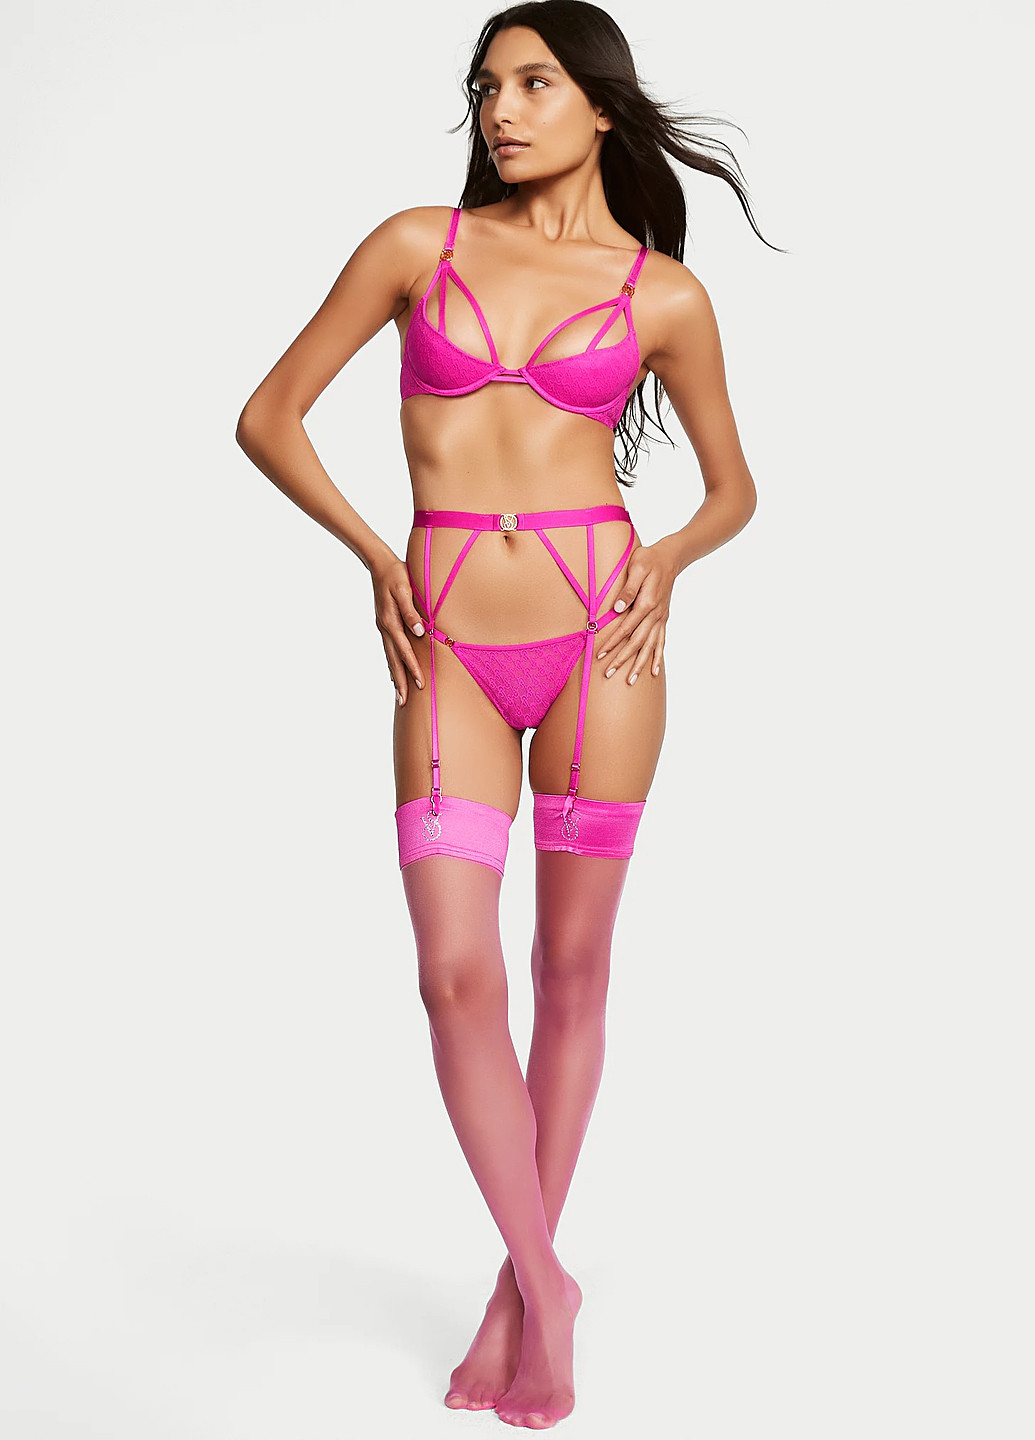 Рожевий демісезонний комплект (бюстгальтер, тусики) Victoria's Secret